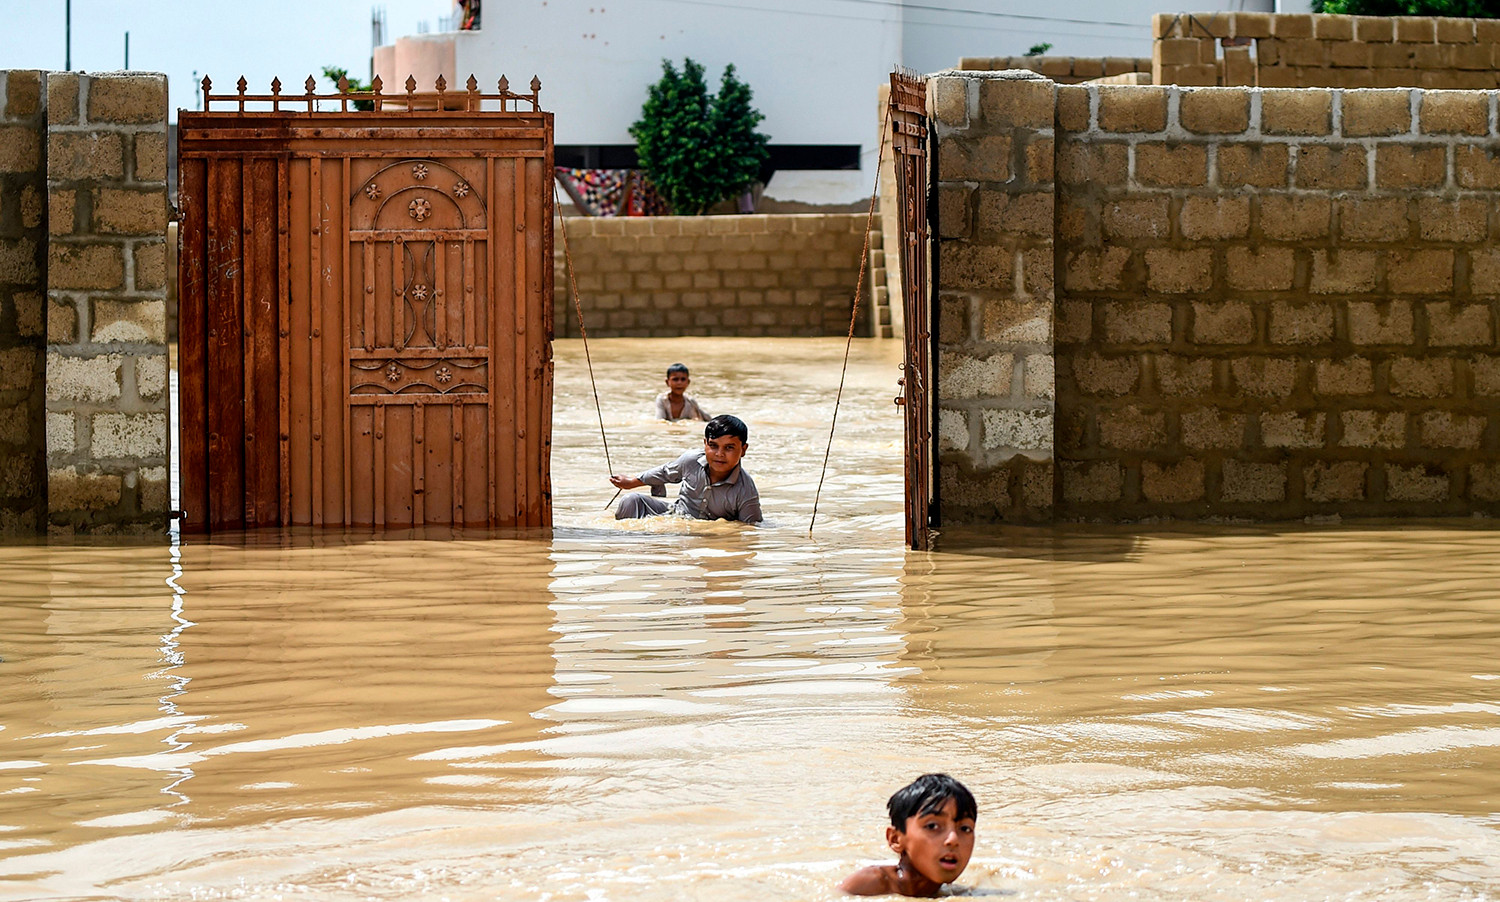 Các cậu bé chơi đùa giữa dòng nước lũ trong những cơn mưa gió mùa lớn ở thành phố Karachi, Pakistan, vào ngày 31/7.